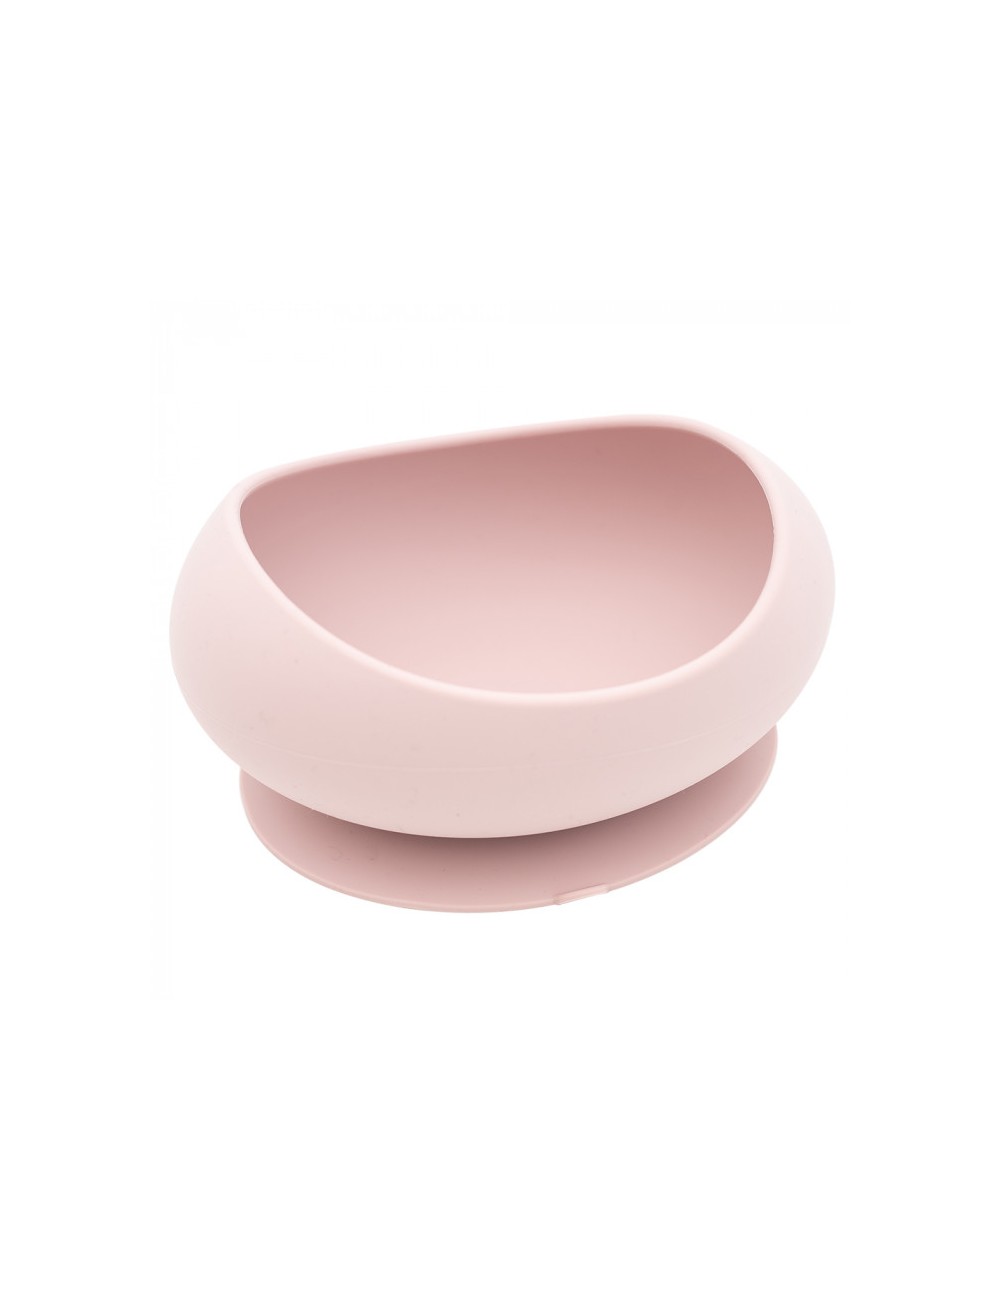 Comprar Vajilla 7 piezas silicona Olmitos a precio de oferta Color Pink